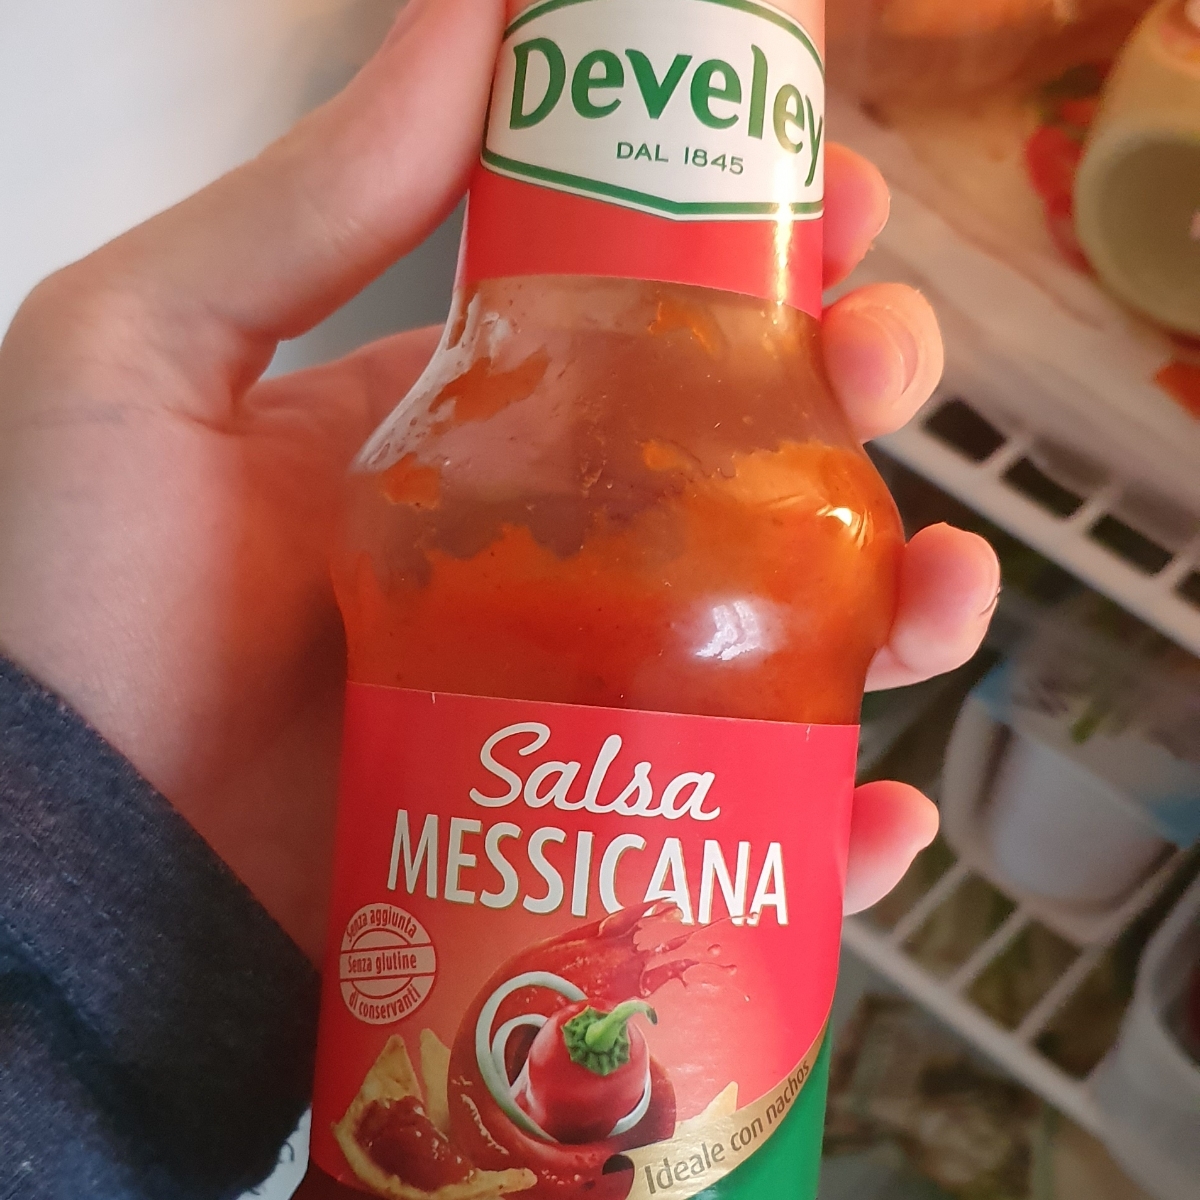 Develey Salsa messicana Review